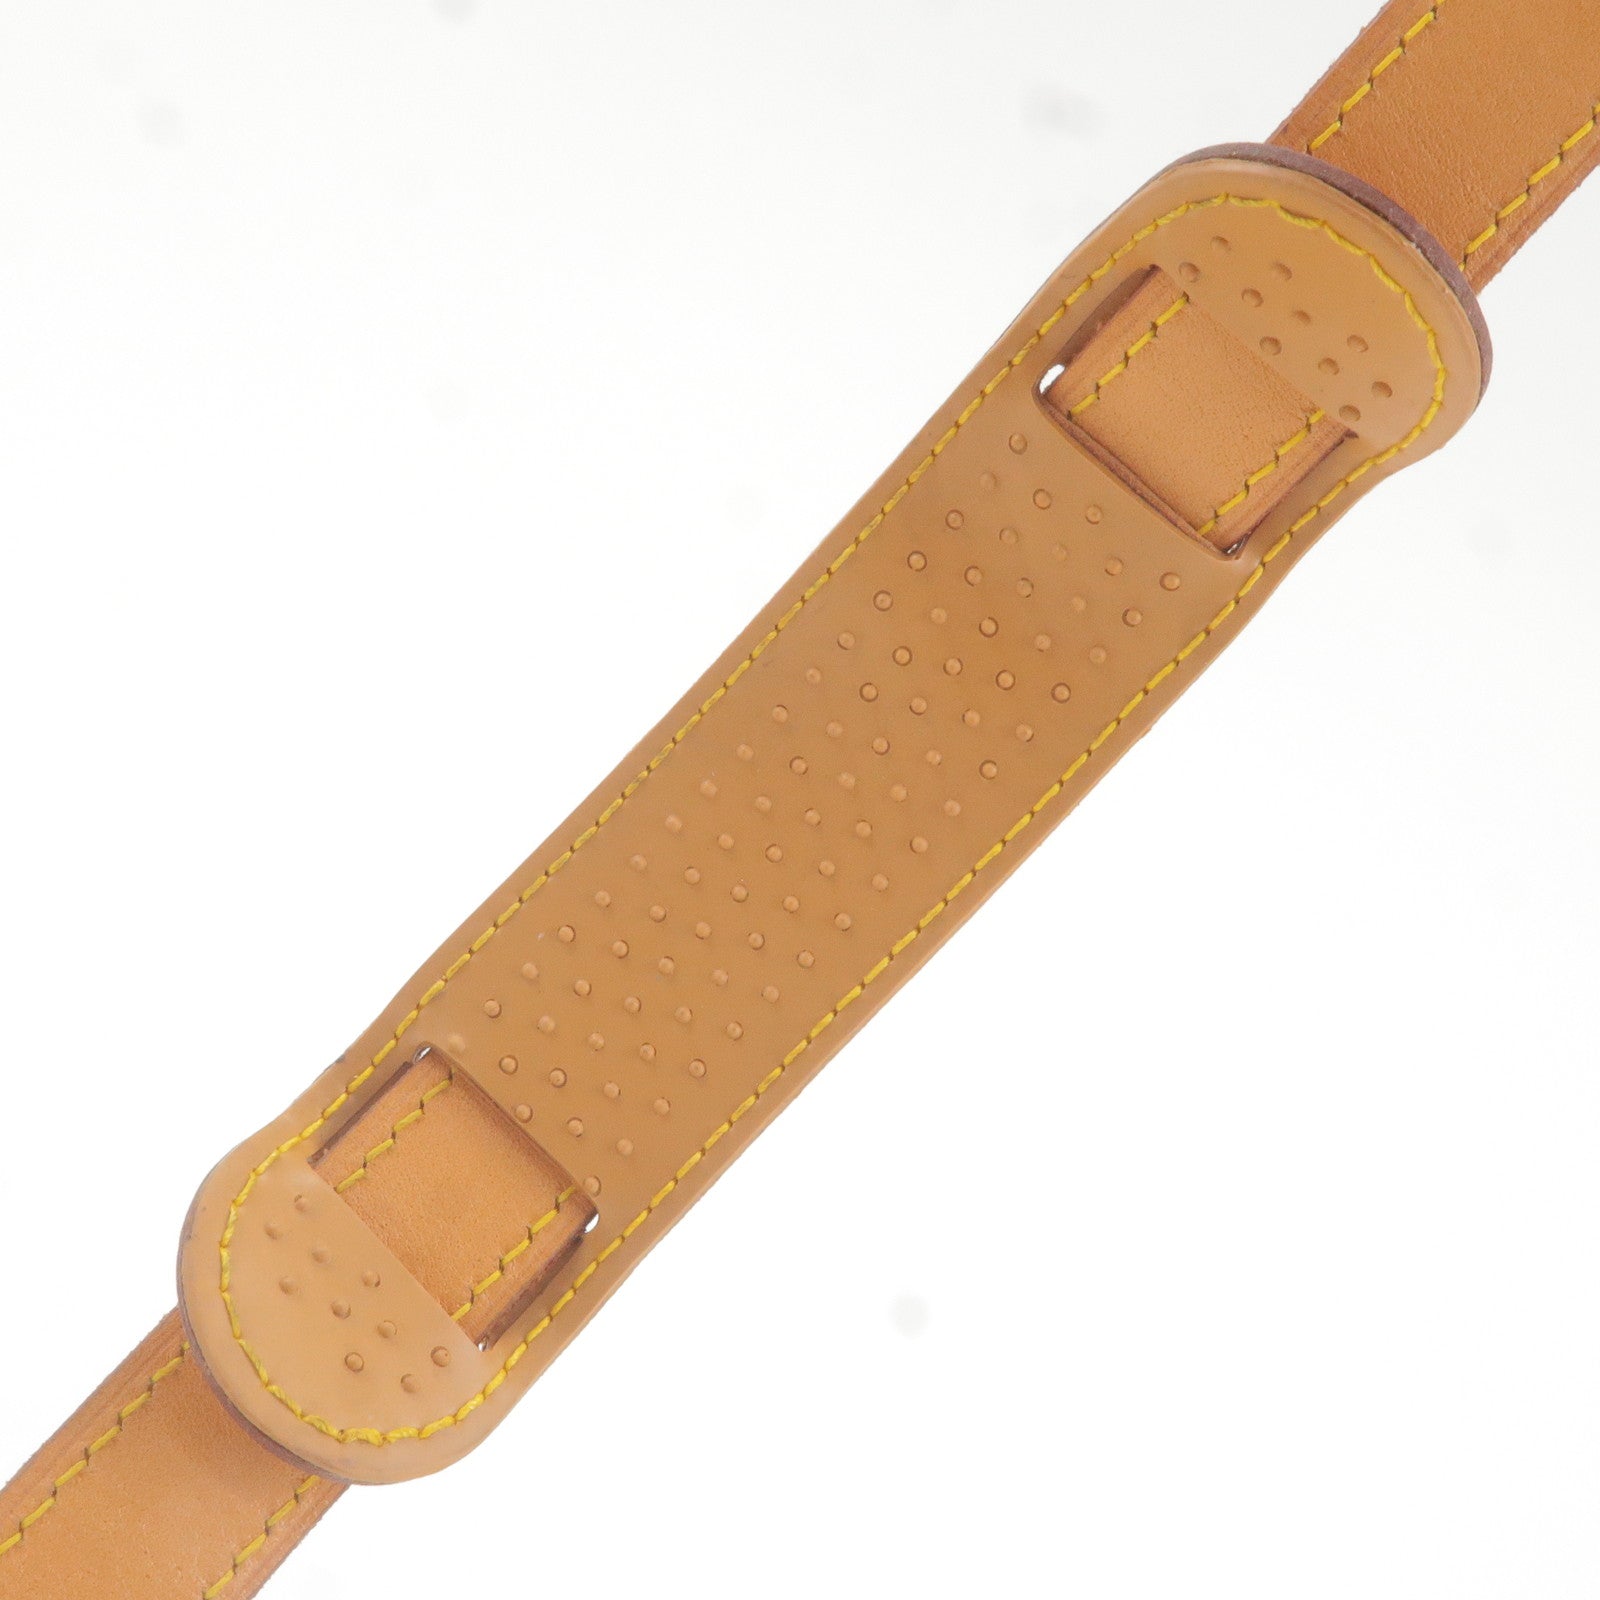 Louis Vuitton Leather Brown Shoulder Strap - Sale